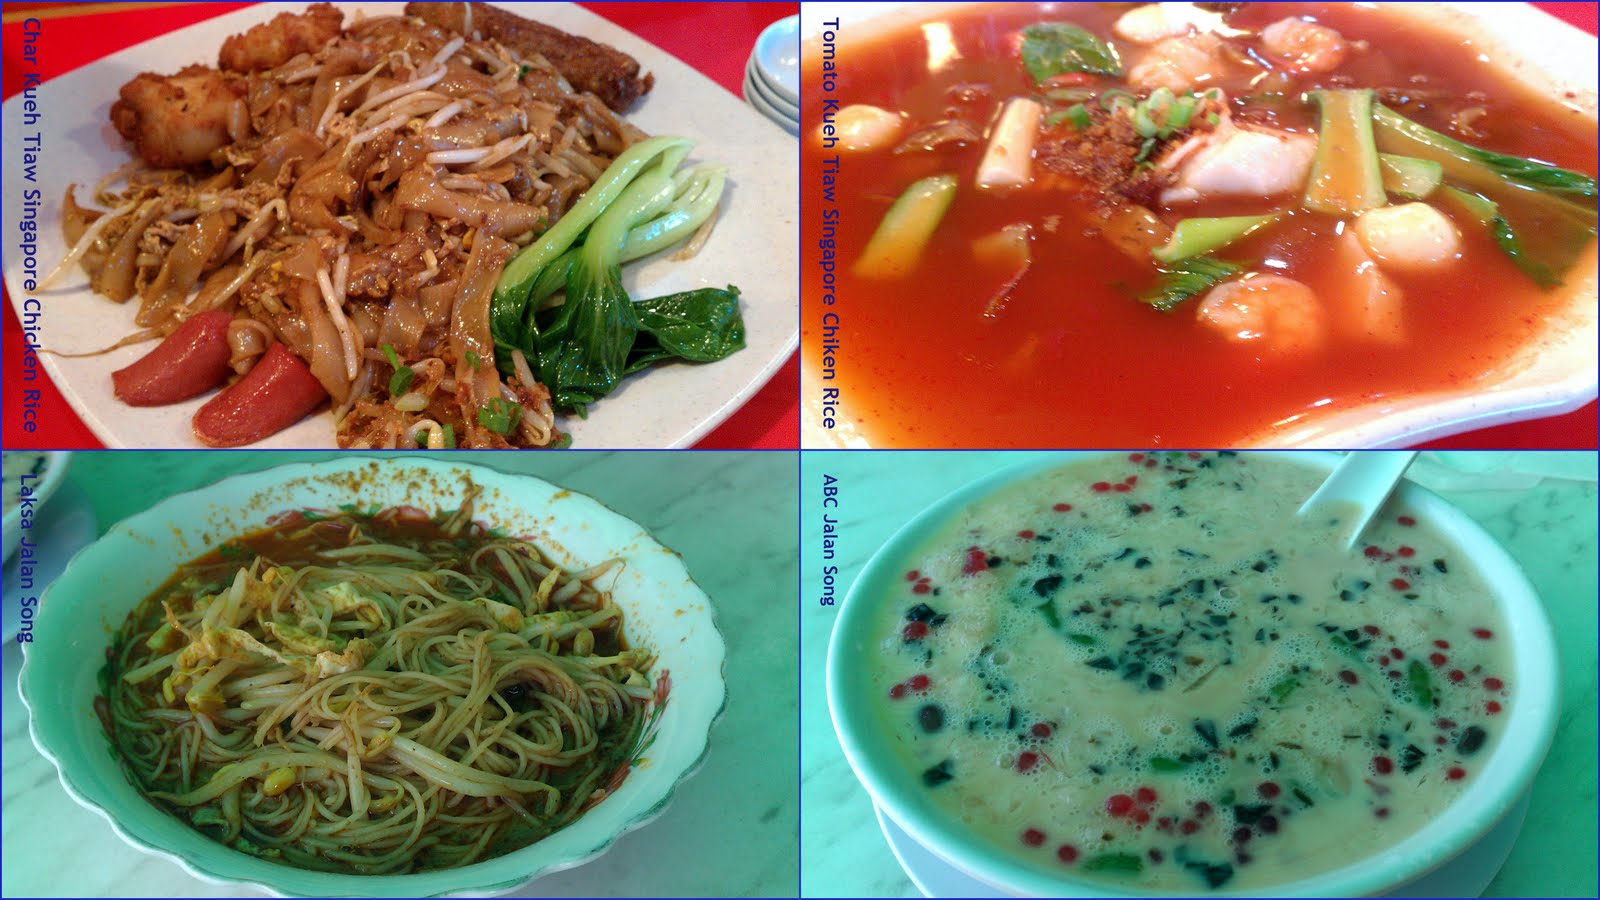 HomeMade DIY HowTo Make: Food of Kuching